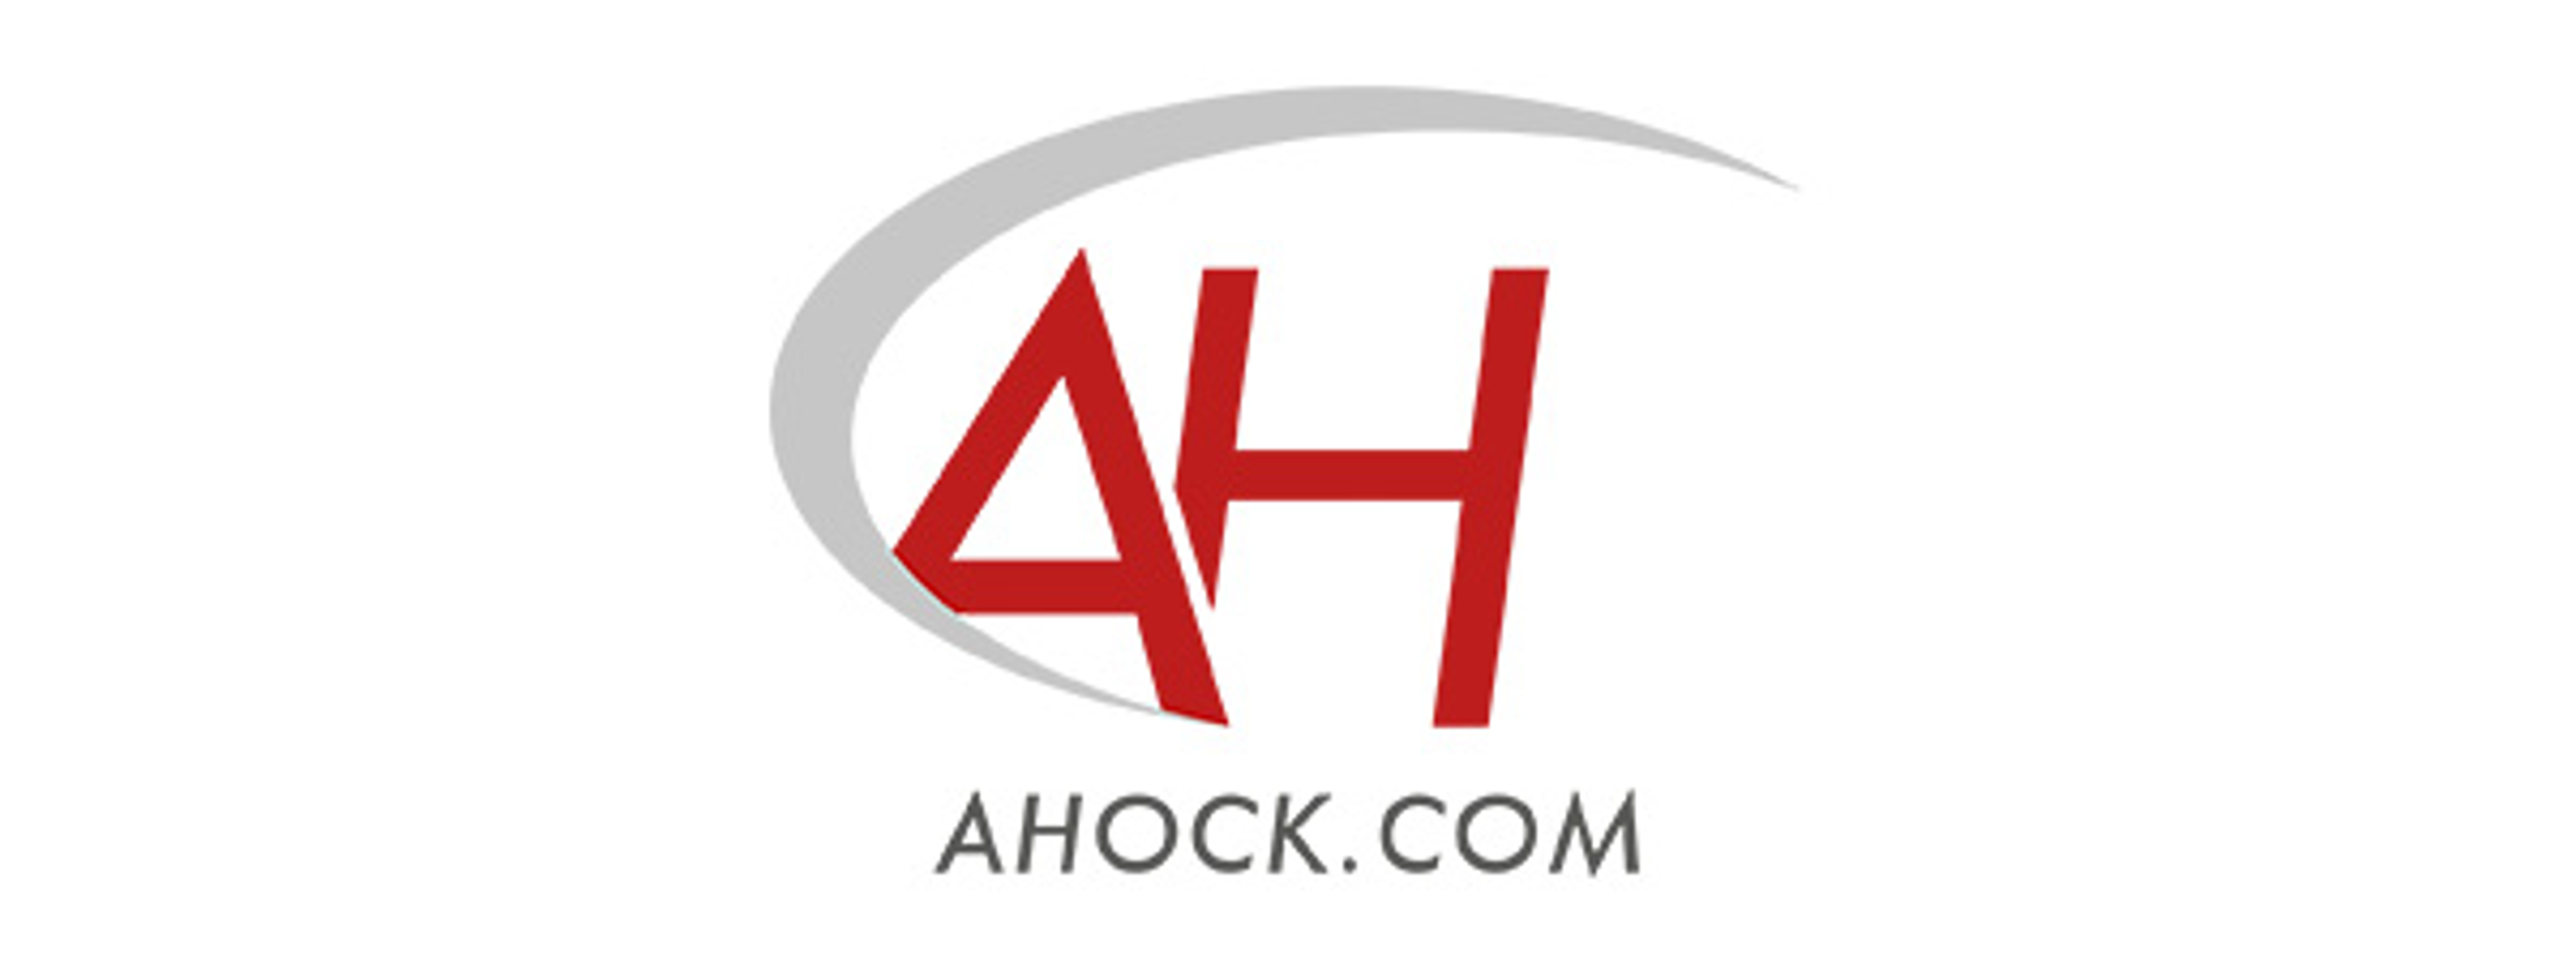 A. Hock GmbH<br>